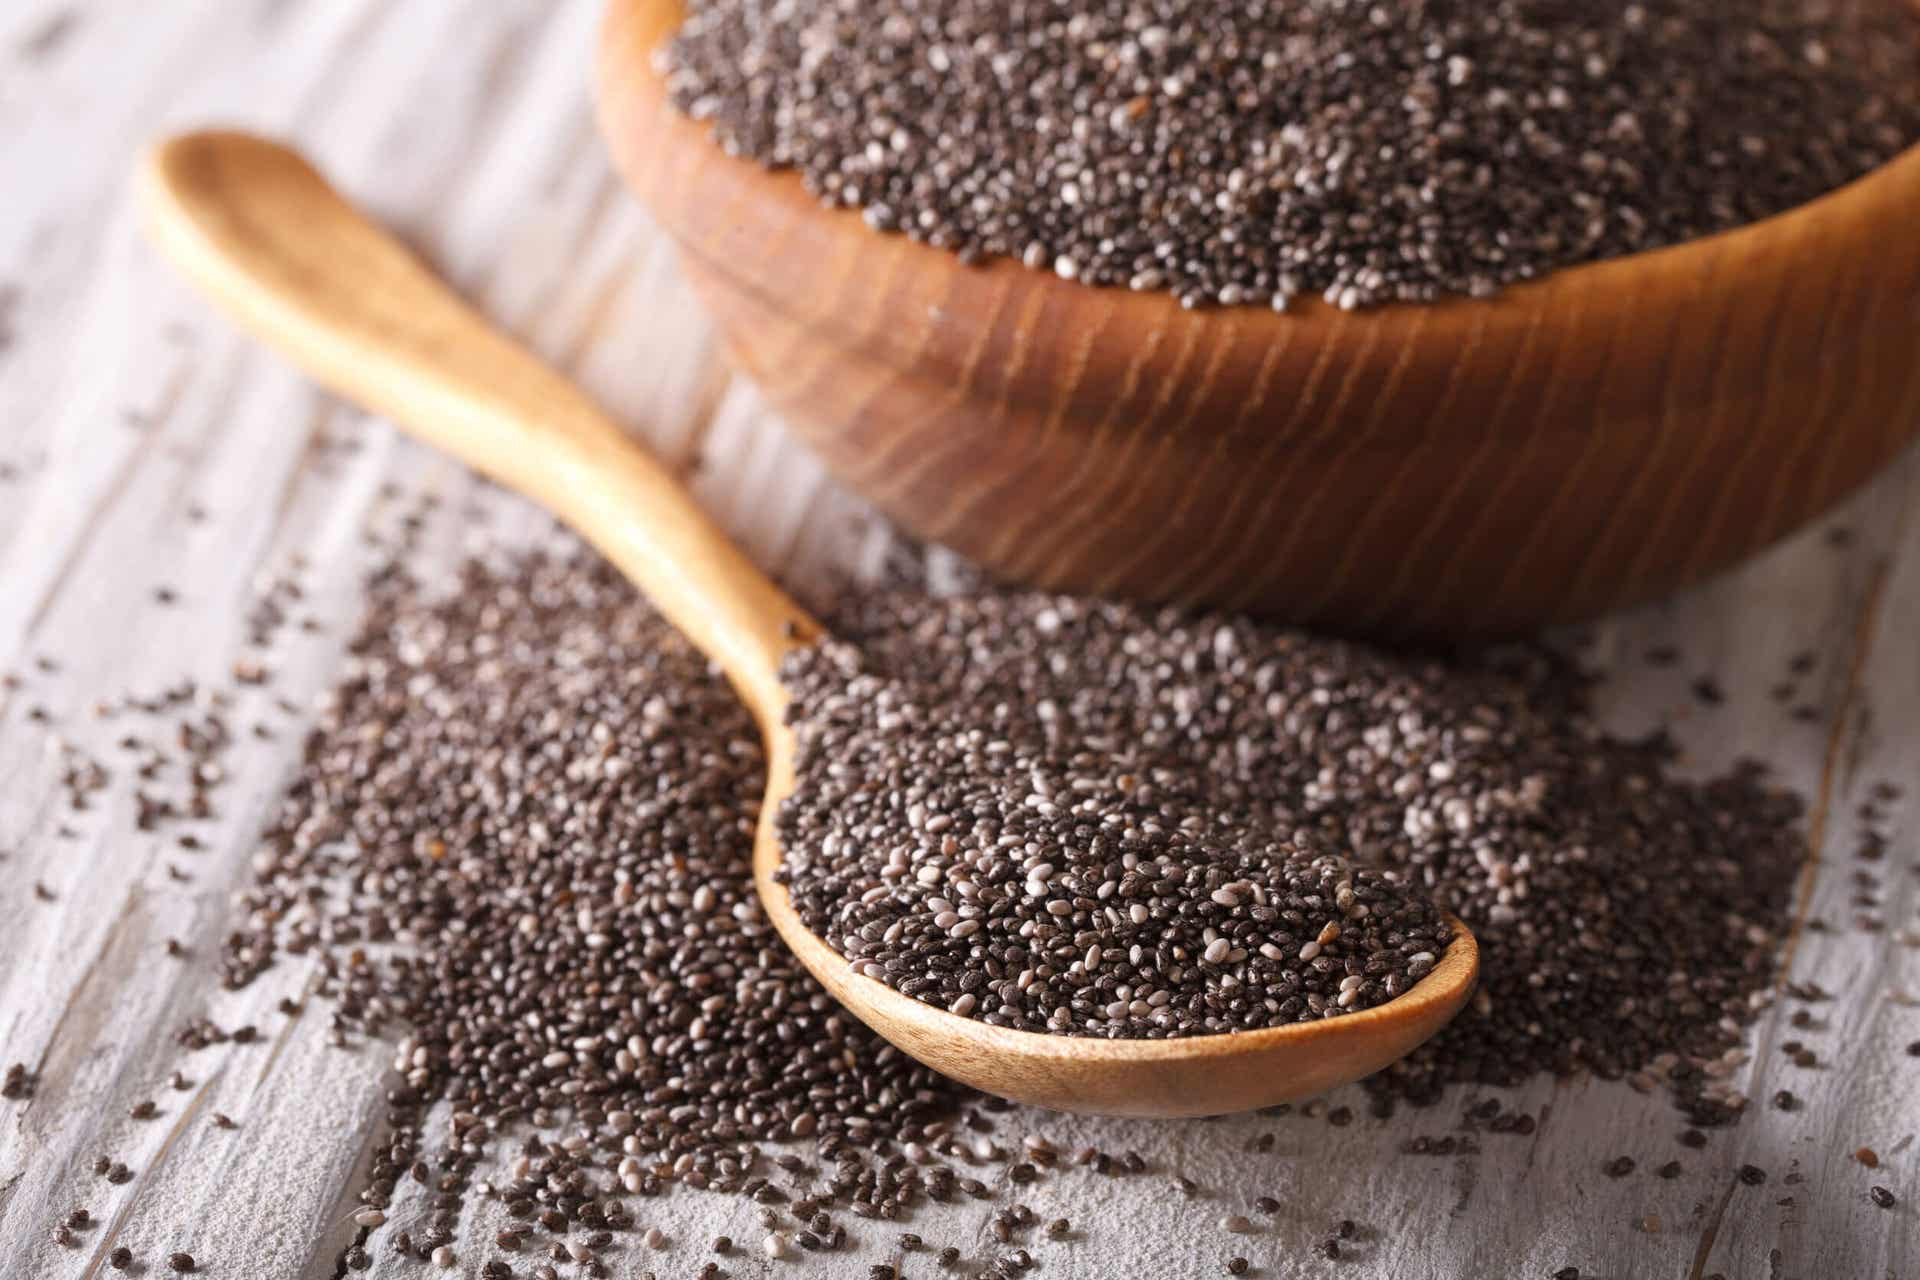 Las semillas de chía son una de las fuentes vegetales de ácidos grasos que más ha ganado popularidad en los últimos años.